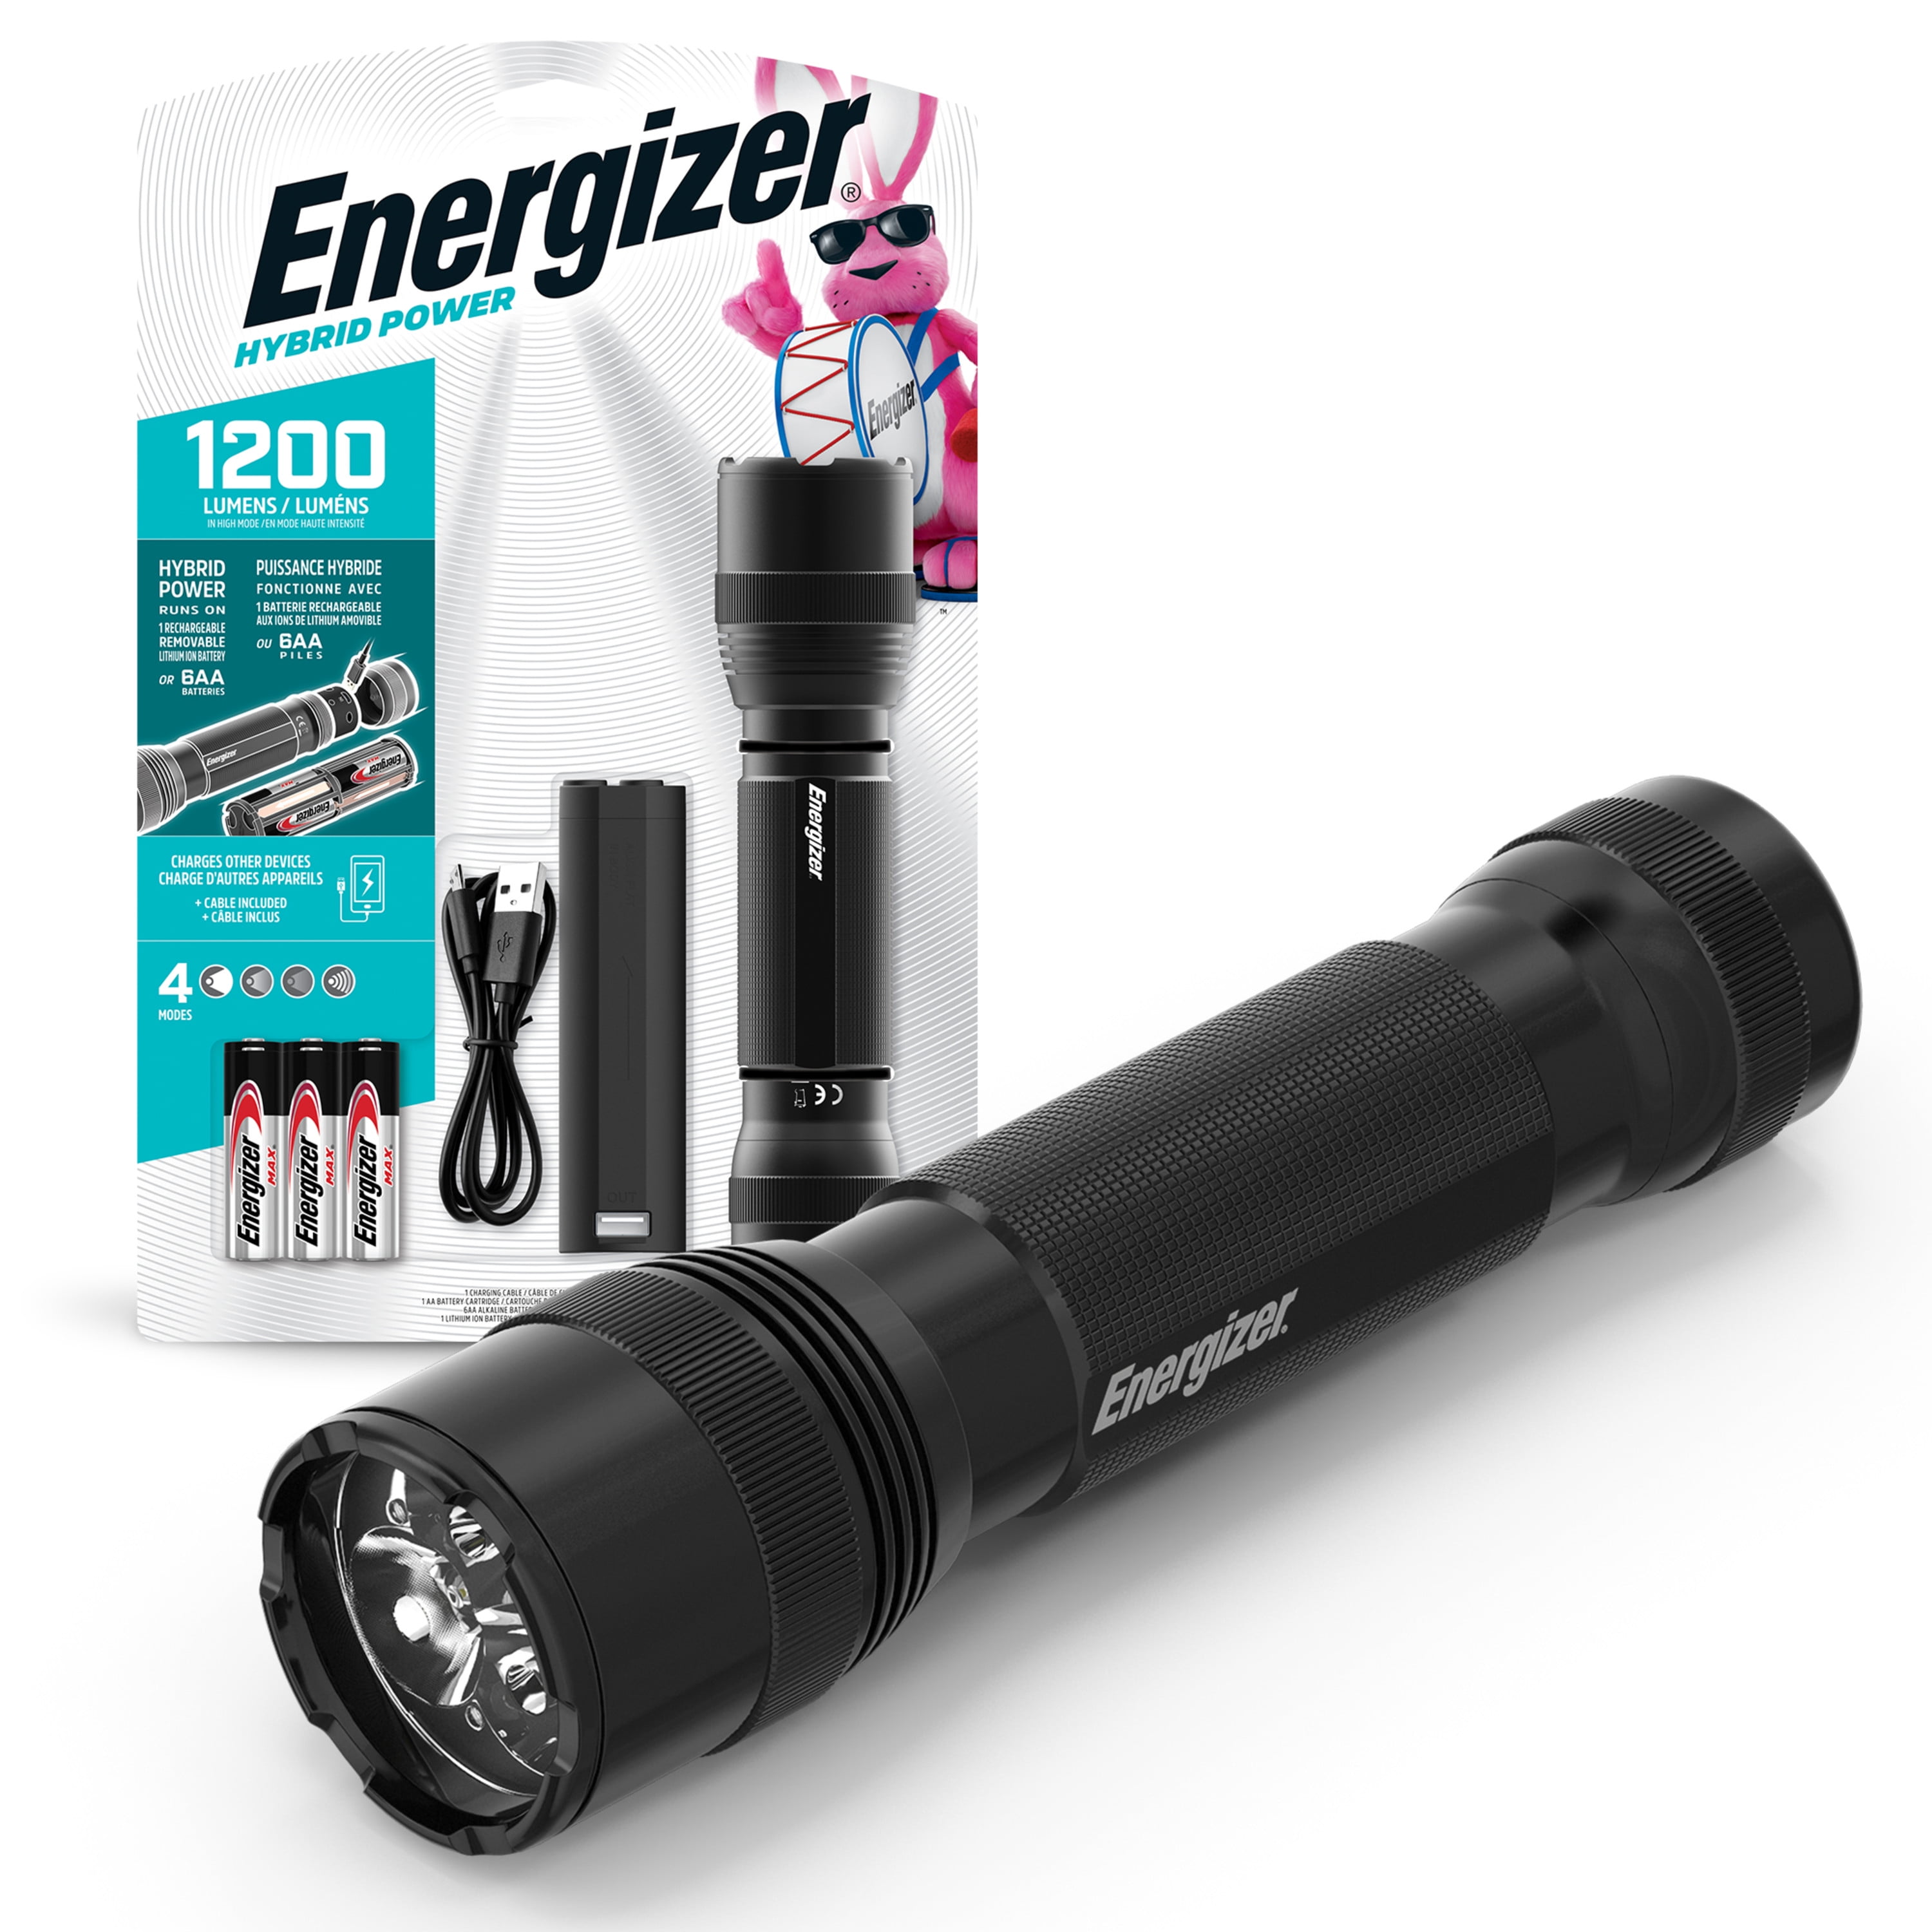 Arresteren Tomaat Daarbij Energizer Hybrid Tactical LED Light, 1200 Lumen, IPX4, Aluminum Body -  Walmart.com